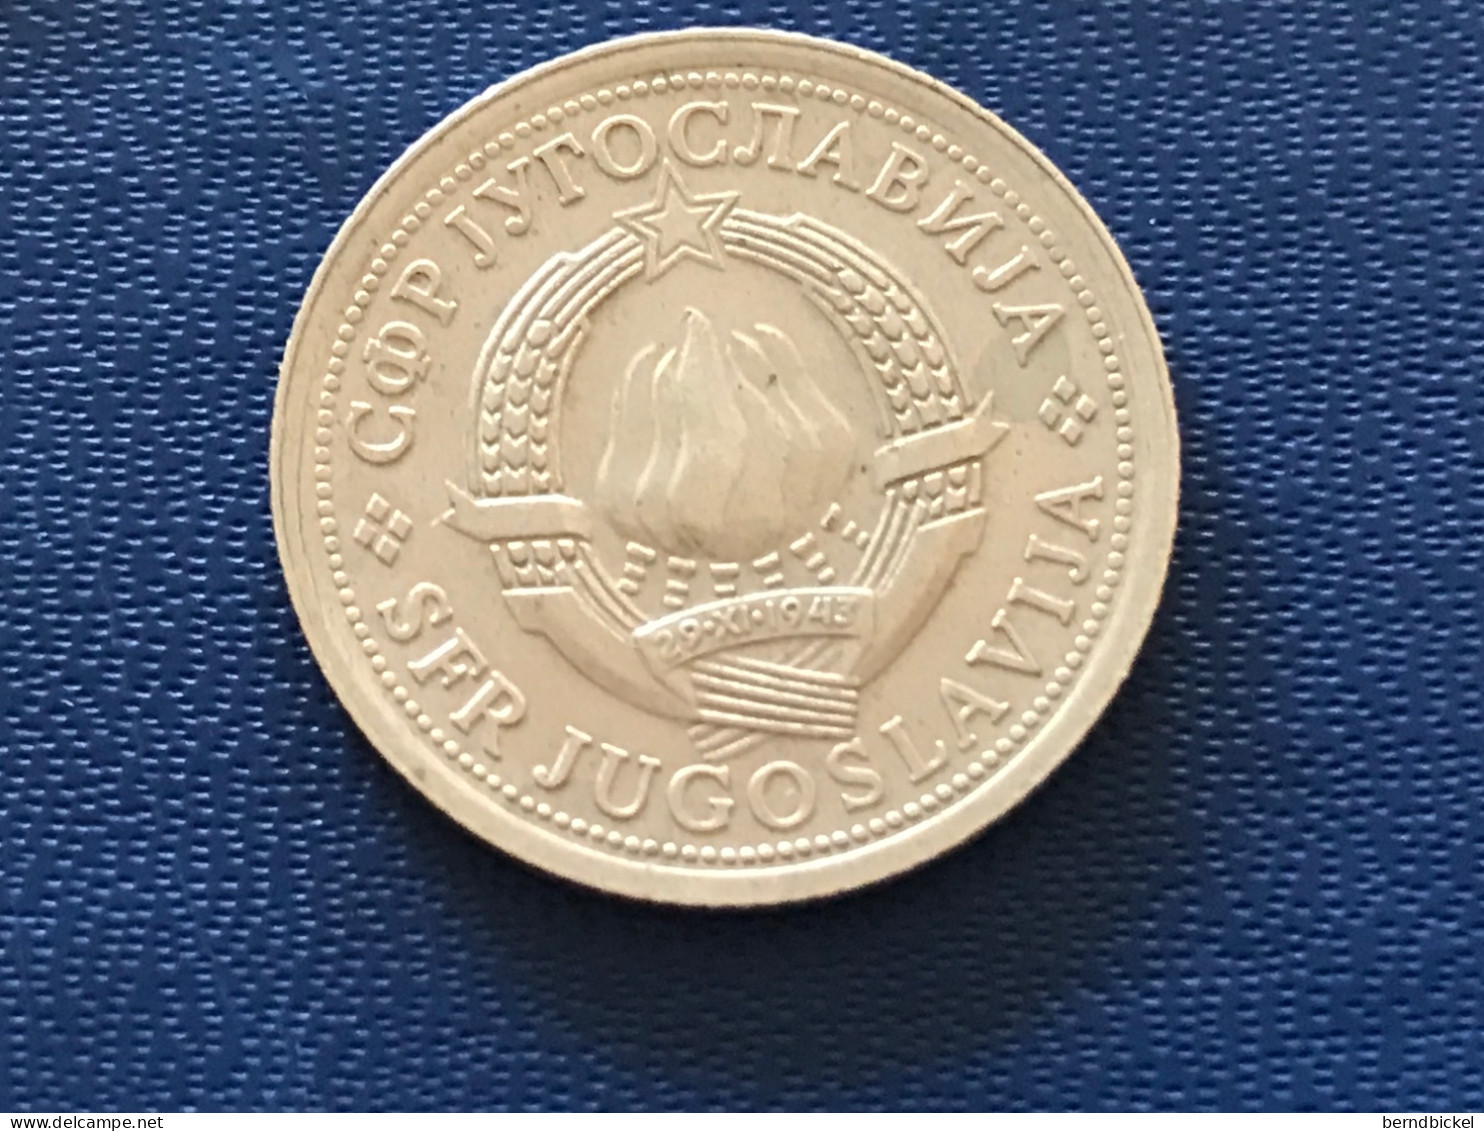 Münze Münzen Umlaufmünze Jugoslawien 1 Dinar 1976 - Yugoslavia